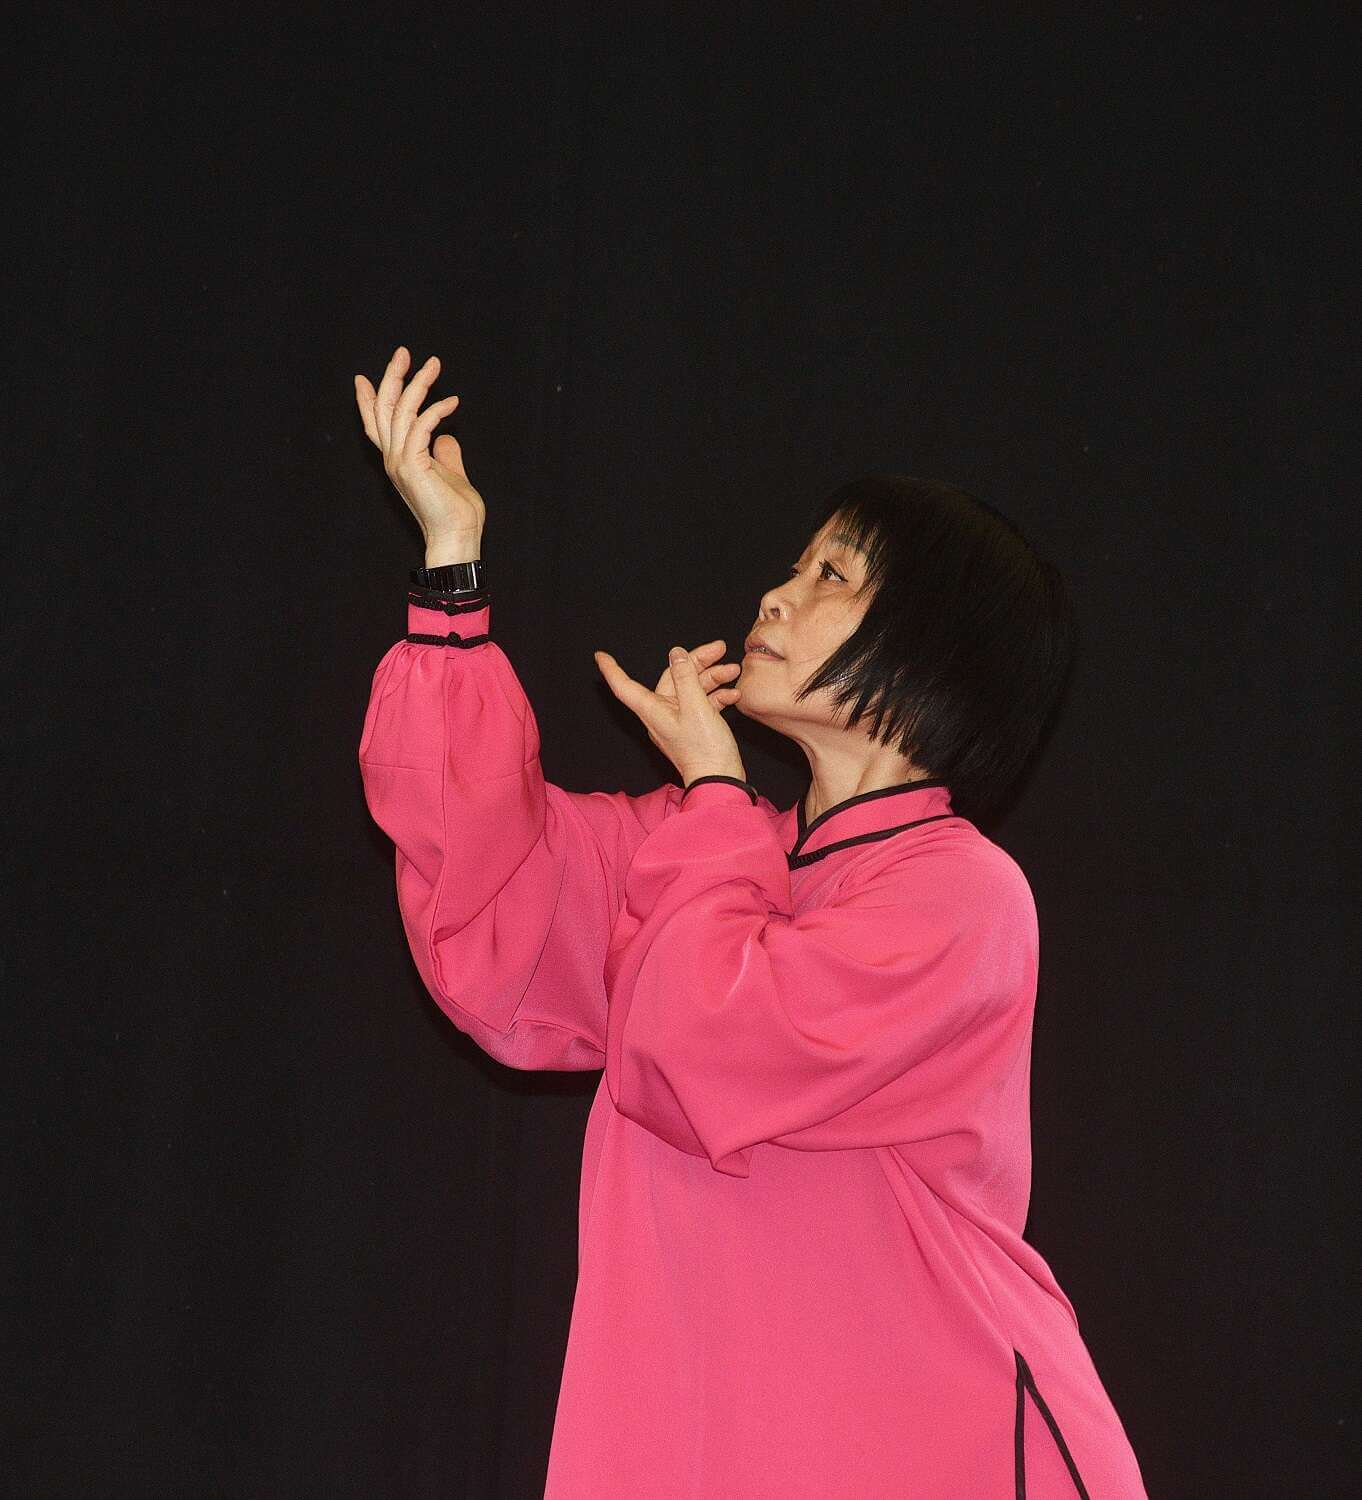 Eine Frau in einem roten Gewand bei einer Bewegung des Qigong, bei der sie beide Hände diagonal mit angewinkelten Armen übereinander nach oben streckt.